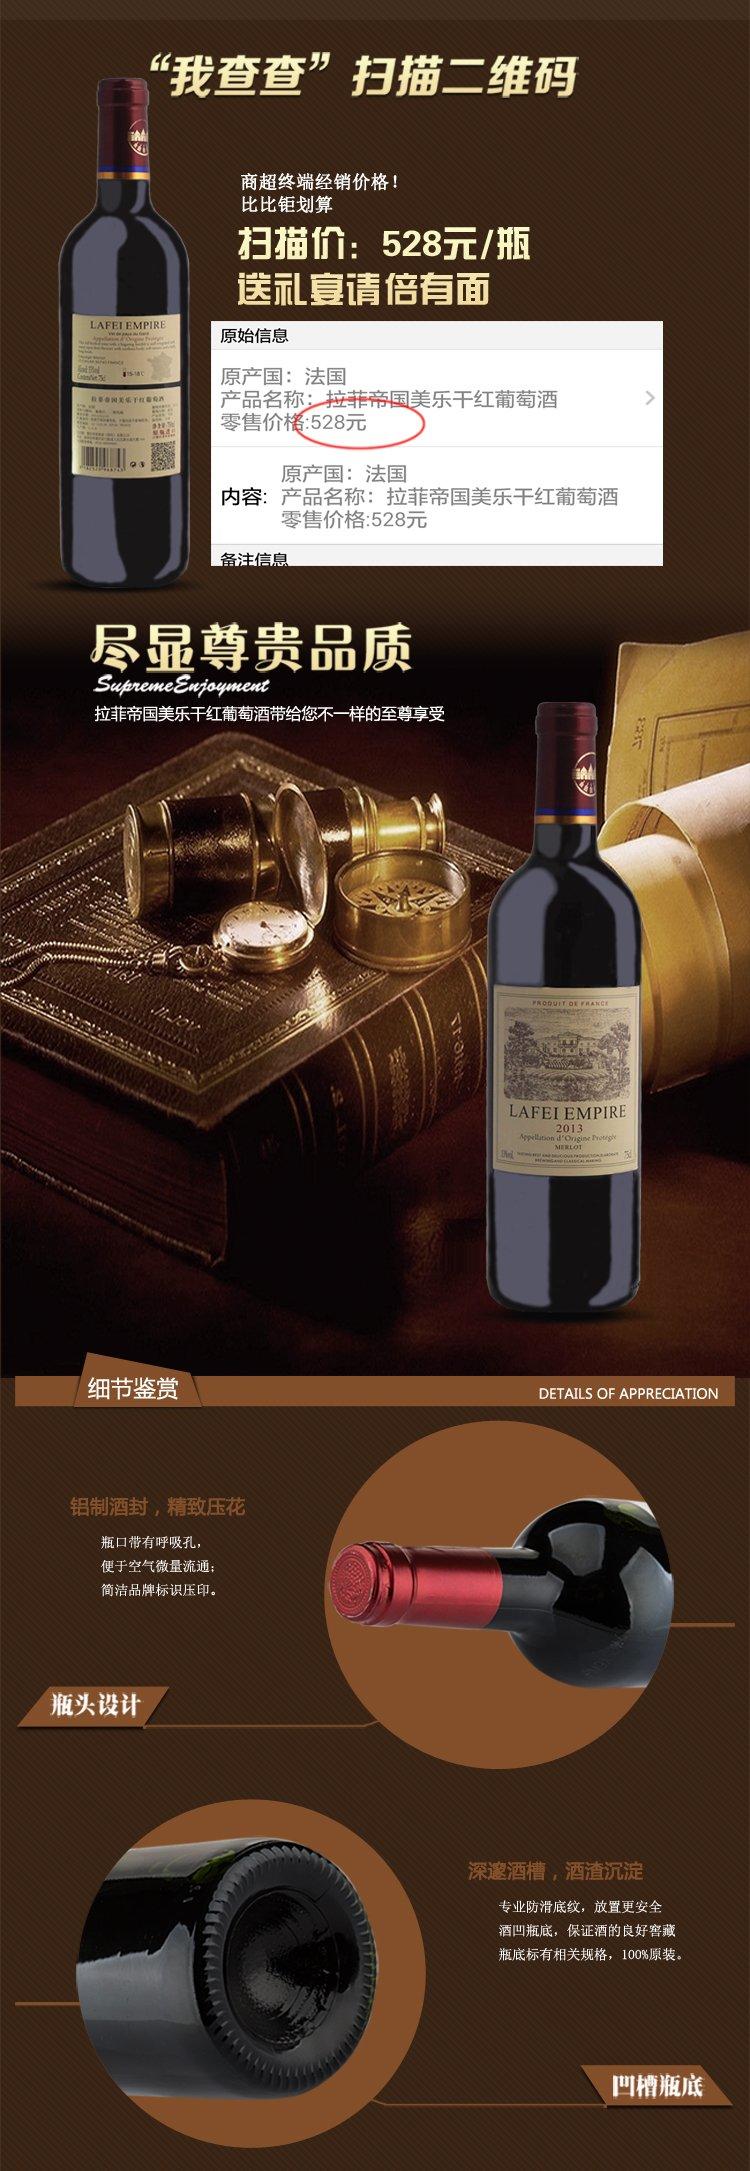 法国原瓶进口原装红酒 拉菲帝国美乐干 红葡萄酒 750ml单支装红酒单瓶红酒全国包邮